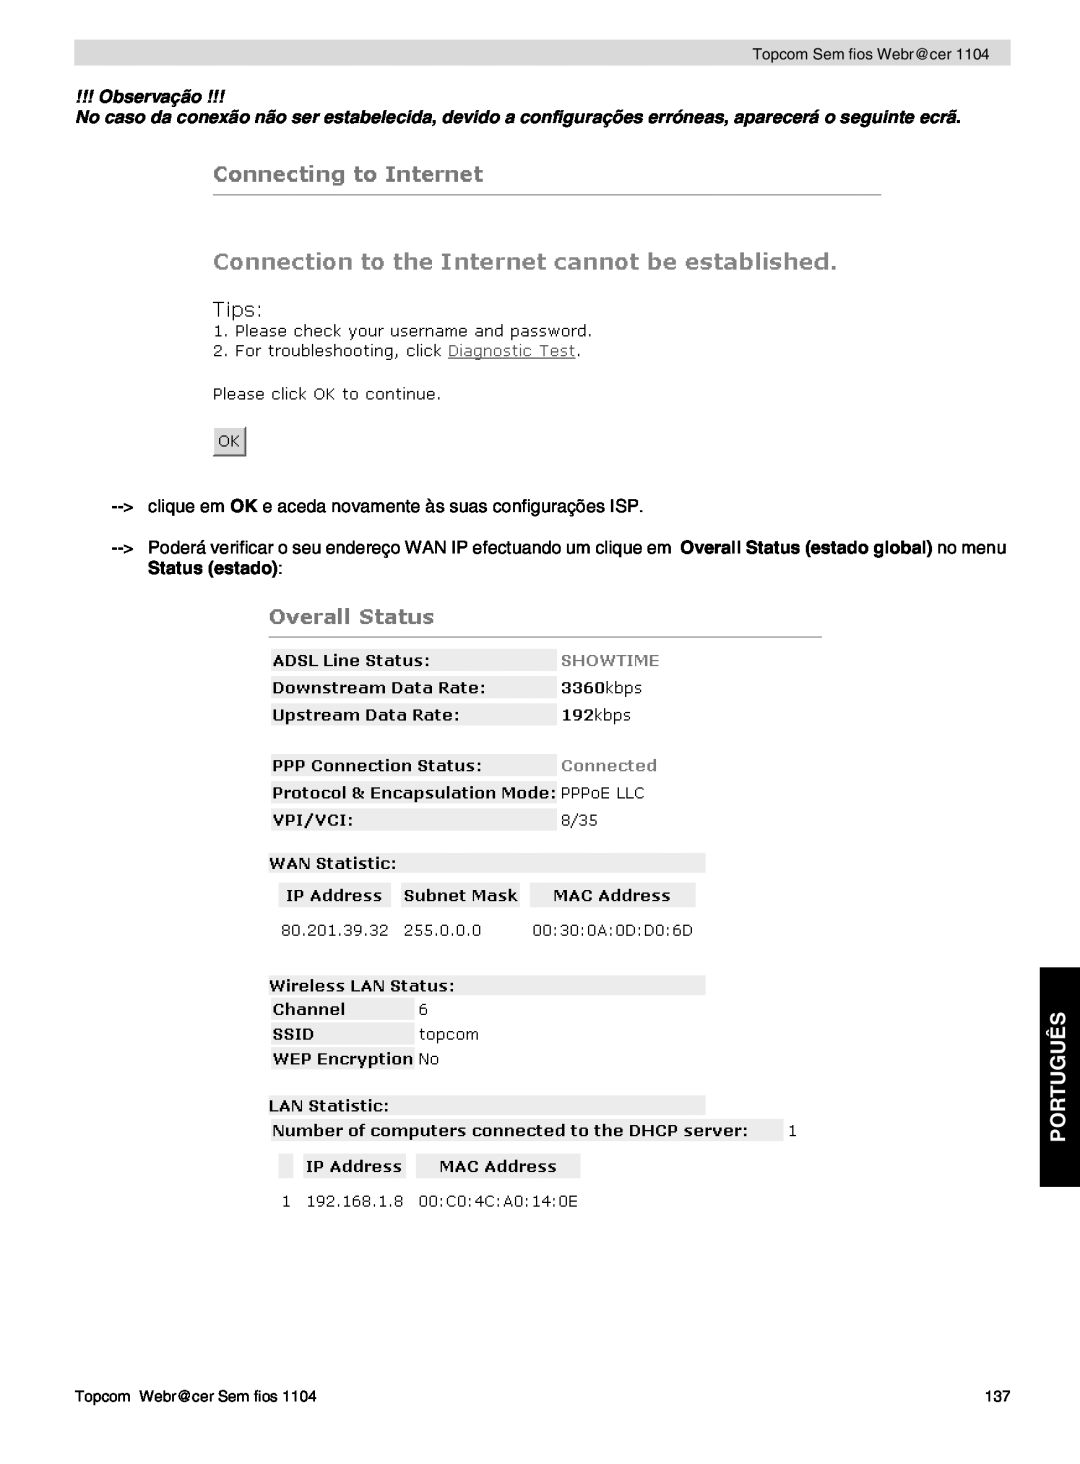 Topcom 1104 manual do utilizador Português, Observação, clique em OK e aceda novamente às suas configurações ISP 